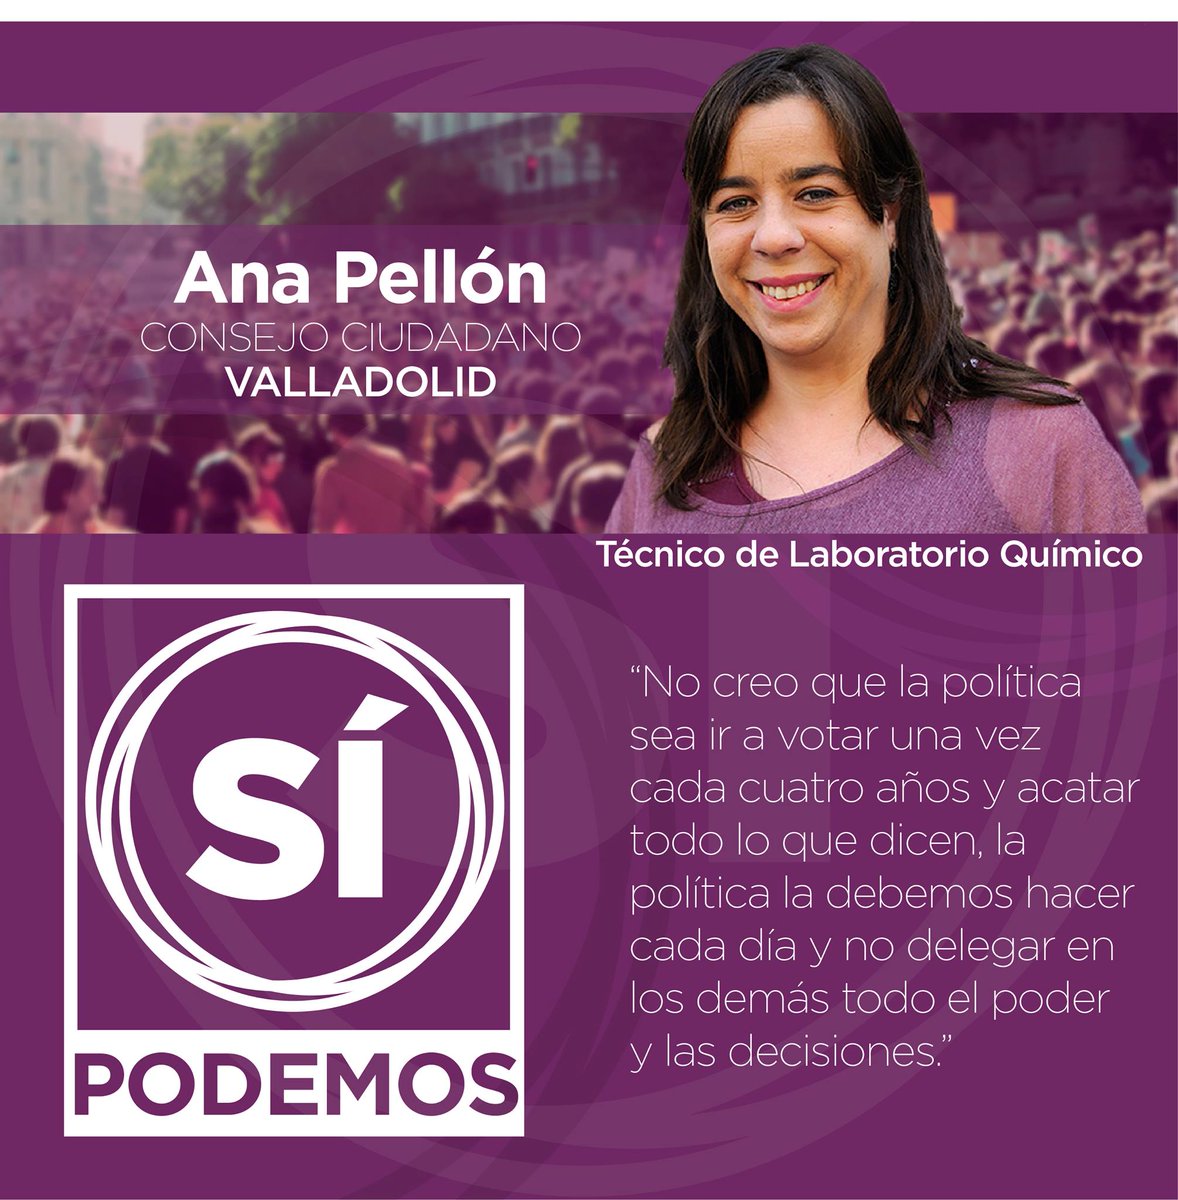 Ana Pellón, Técnico de Laboratorio Químico @AnucaP